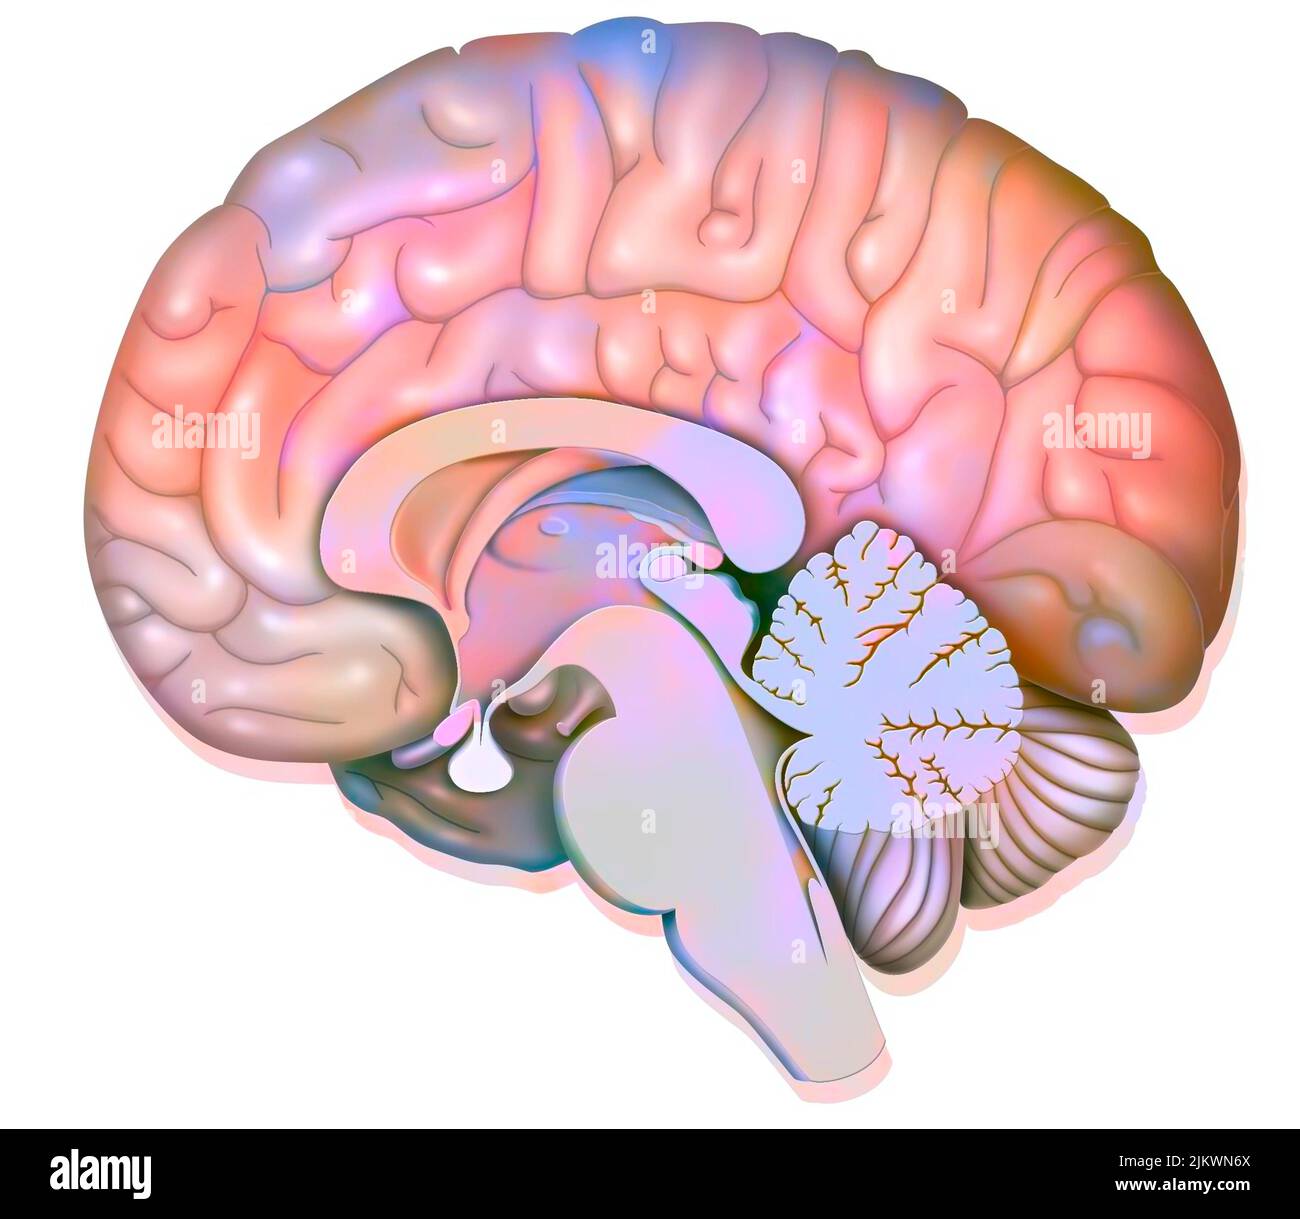 Sezione sagittale media del cervello umano che mostra l'ipotalamo. Foto Stock